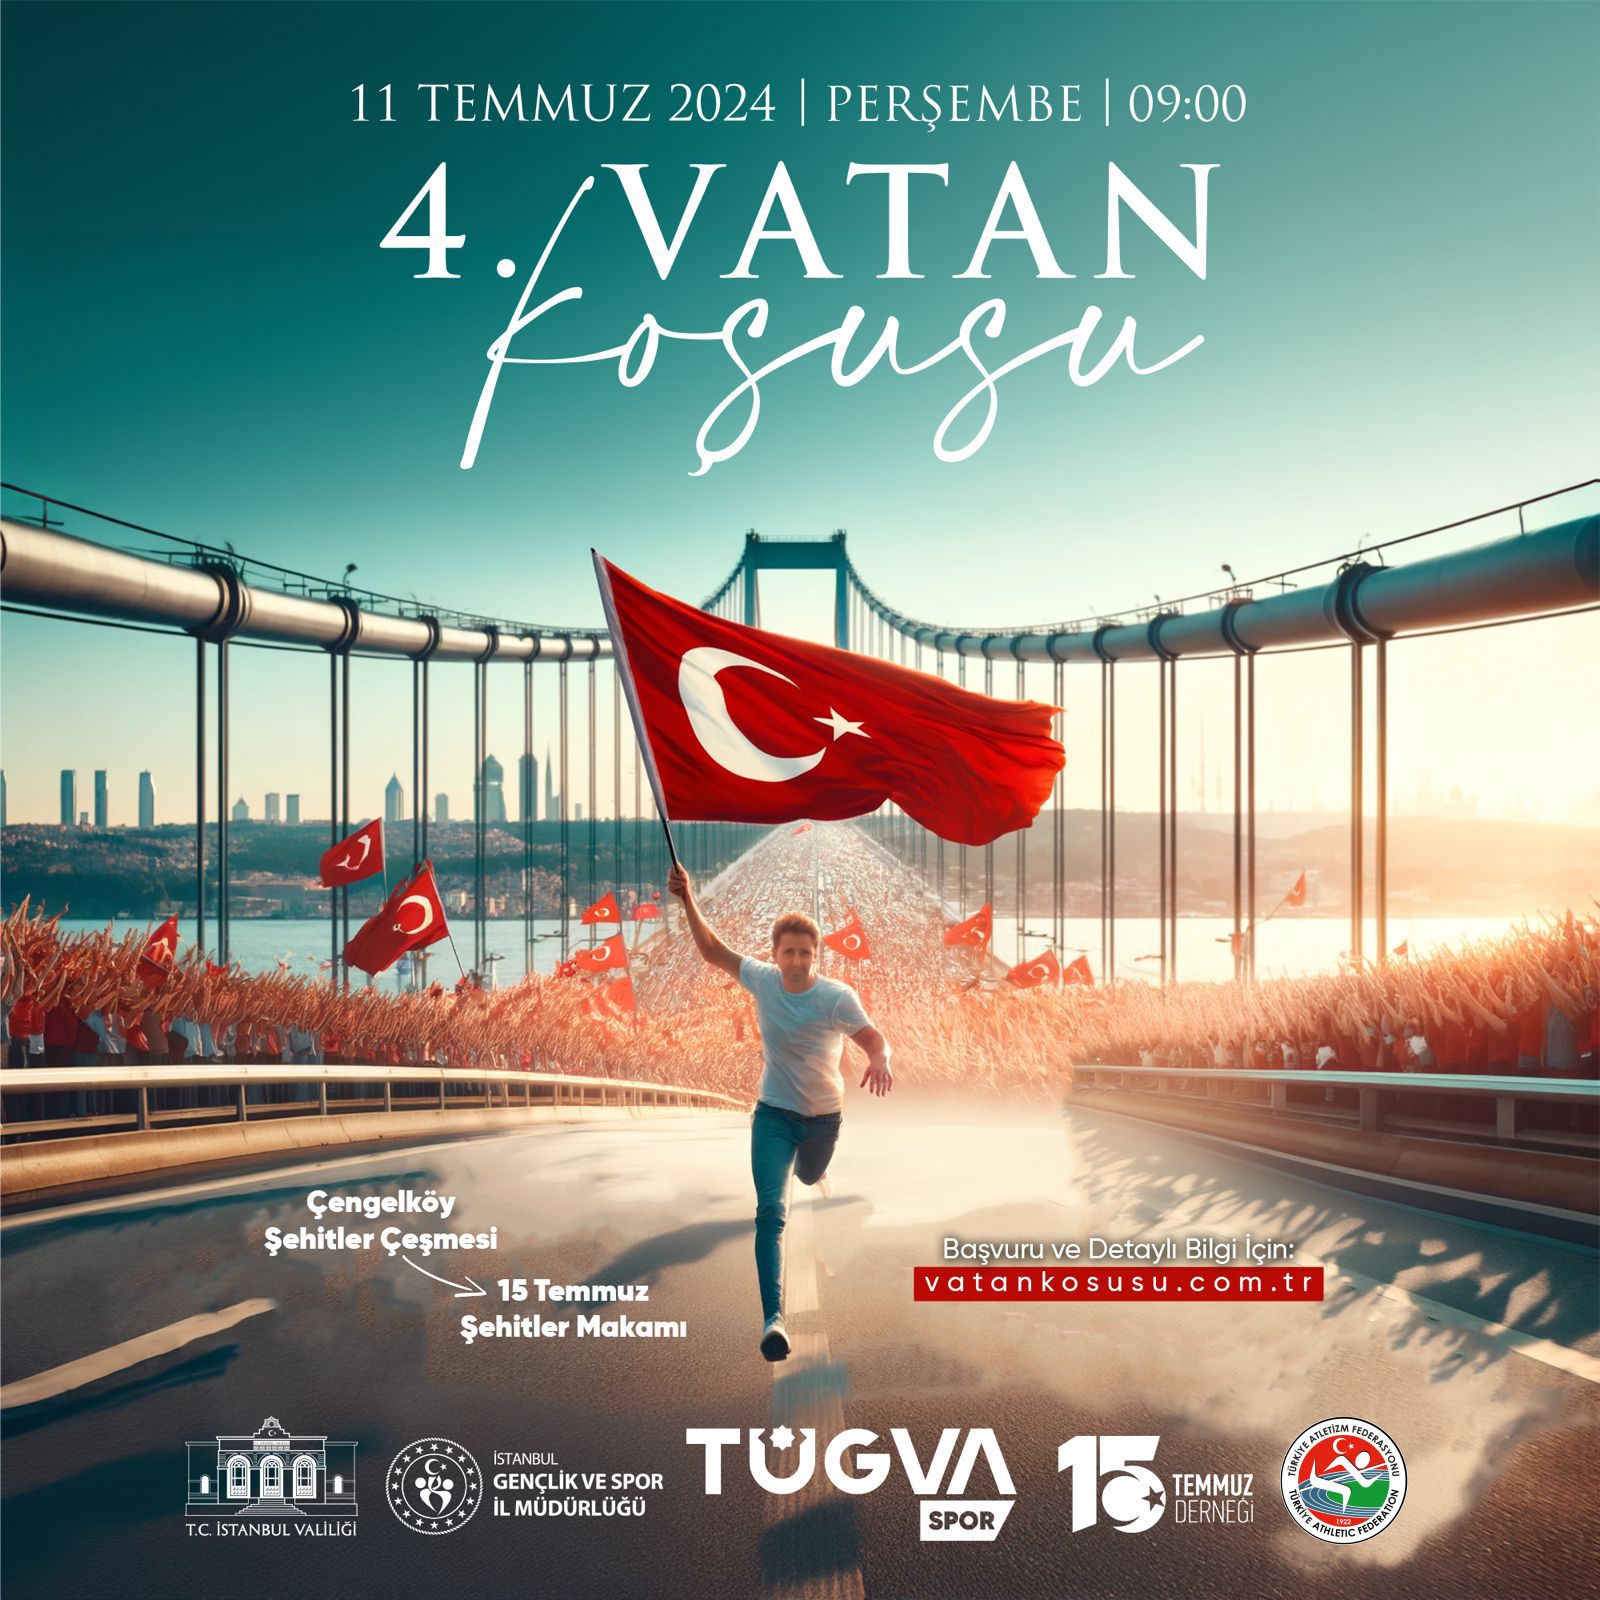 Vatan Koşusu 11 Temmuz 2024 Tarihinde İstanbul'da yapılacak.